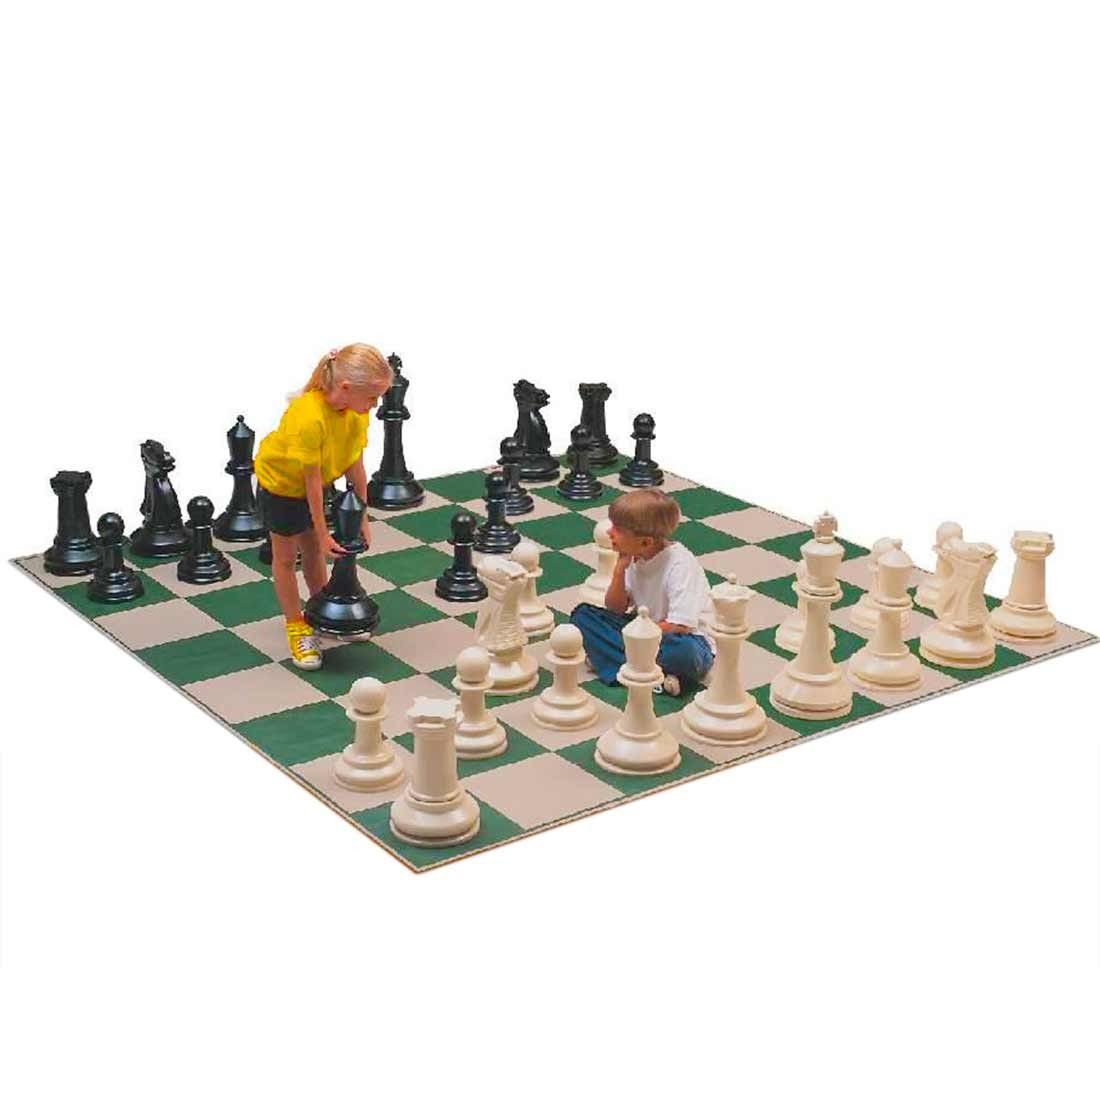 Xadrez gigante é usado em aulas de matemática, educação física